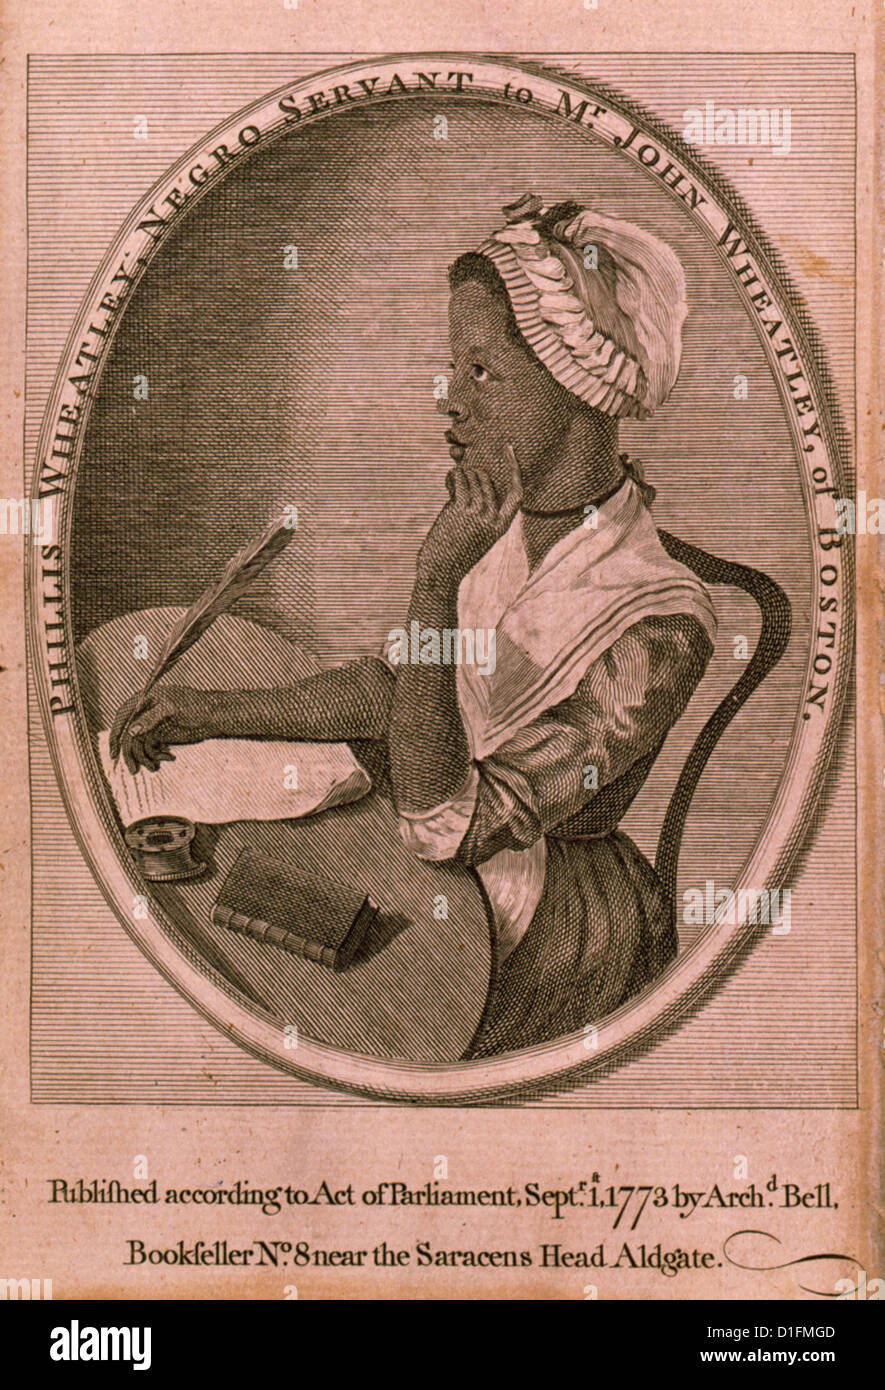 Phillis Wheatley, serviteur de M. John Wheatley, de Boston. Publié 1773 Banque D'Images